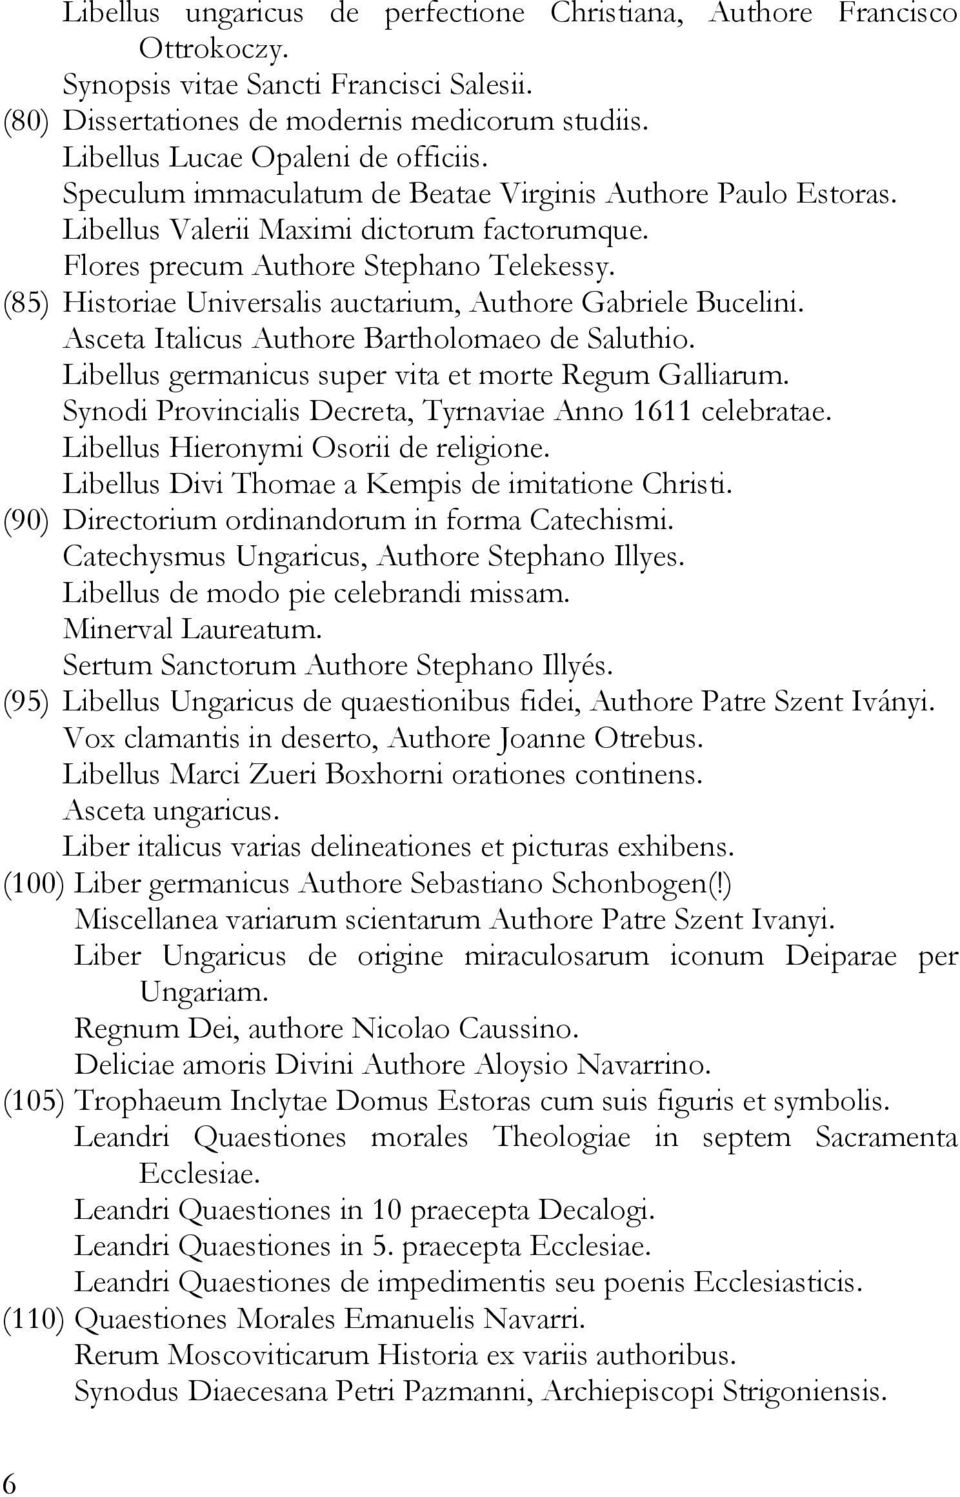 (85) Historiae Universalis auctarium, Authore Gabriele Bucelini. Asceta Italicus Authore Bartholomaeo de Saluthio. Libellus germanicus super vita et morte Regum Galliarum.